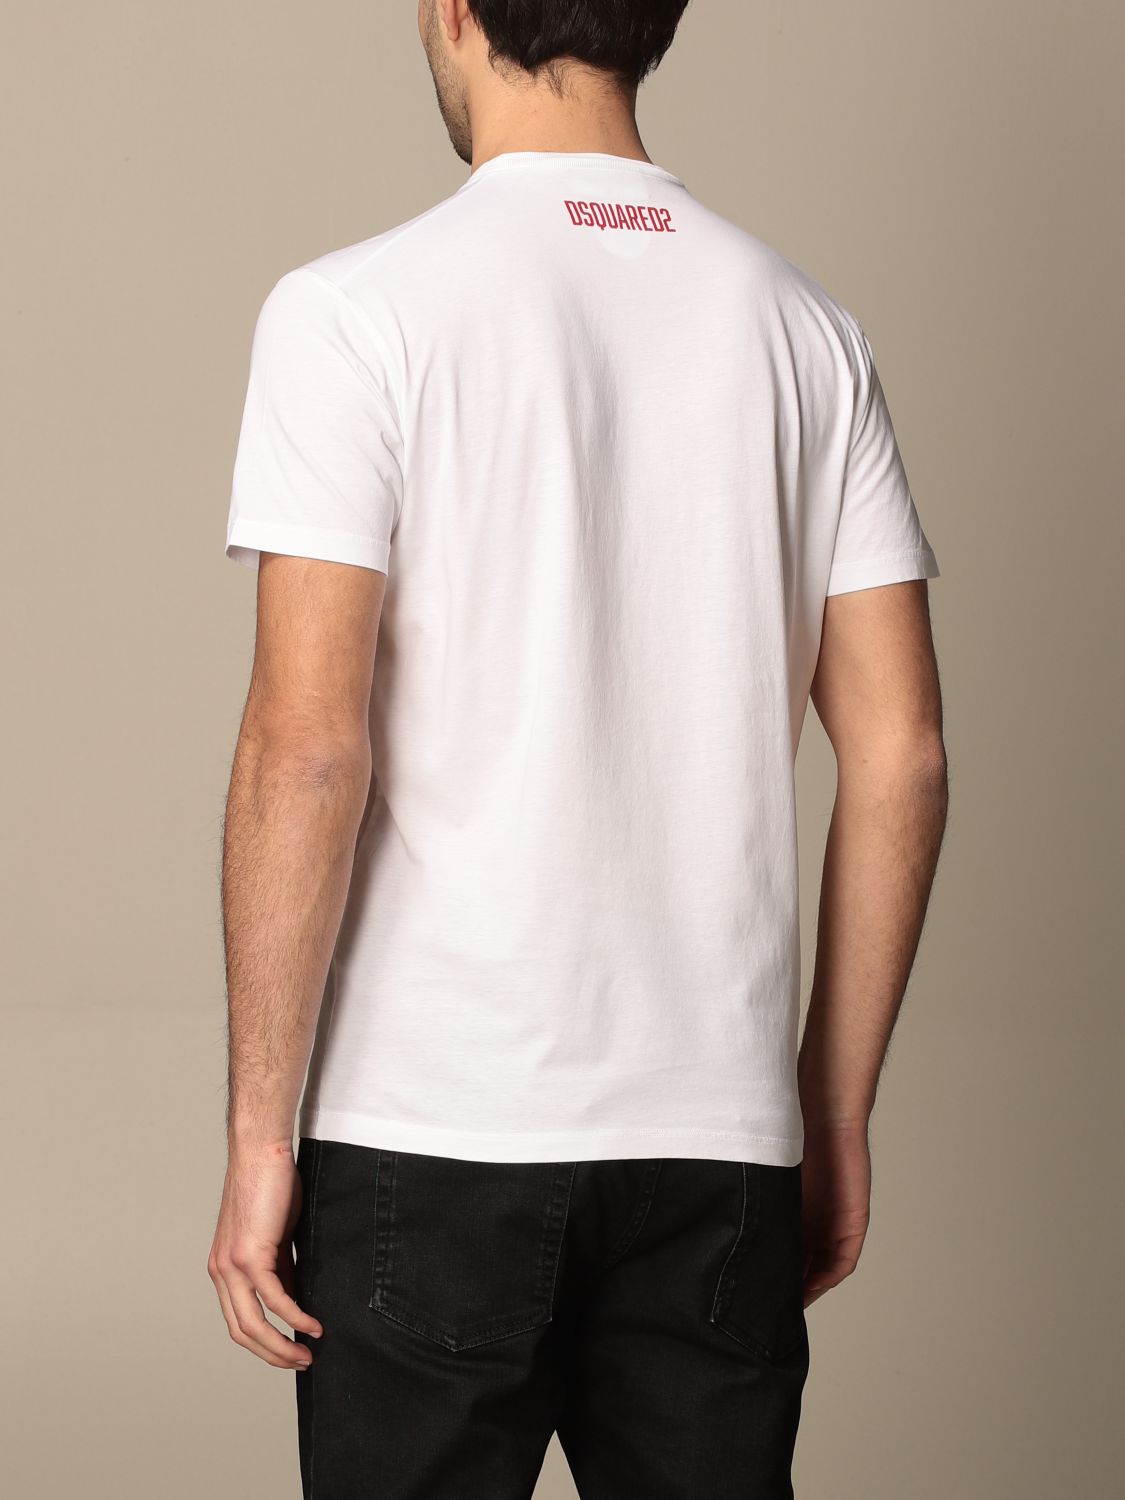 Camiseta Dsquared2: Camiseta hombre Dsquared2 blanco 2